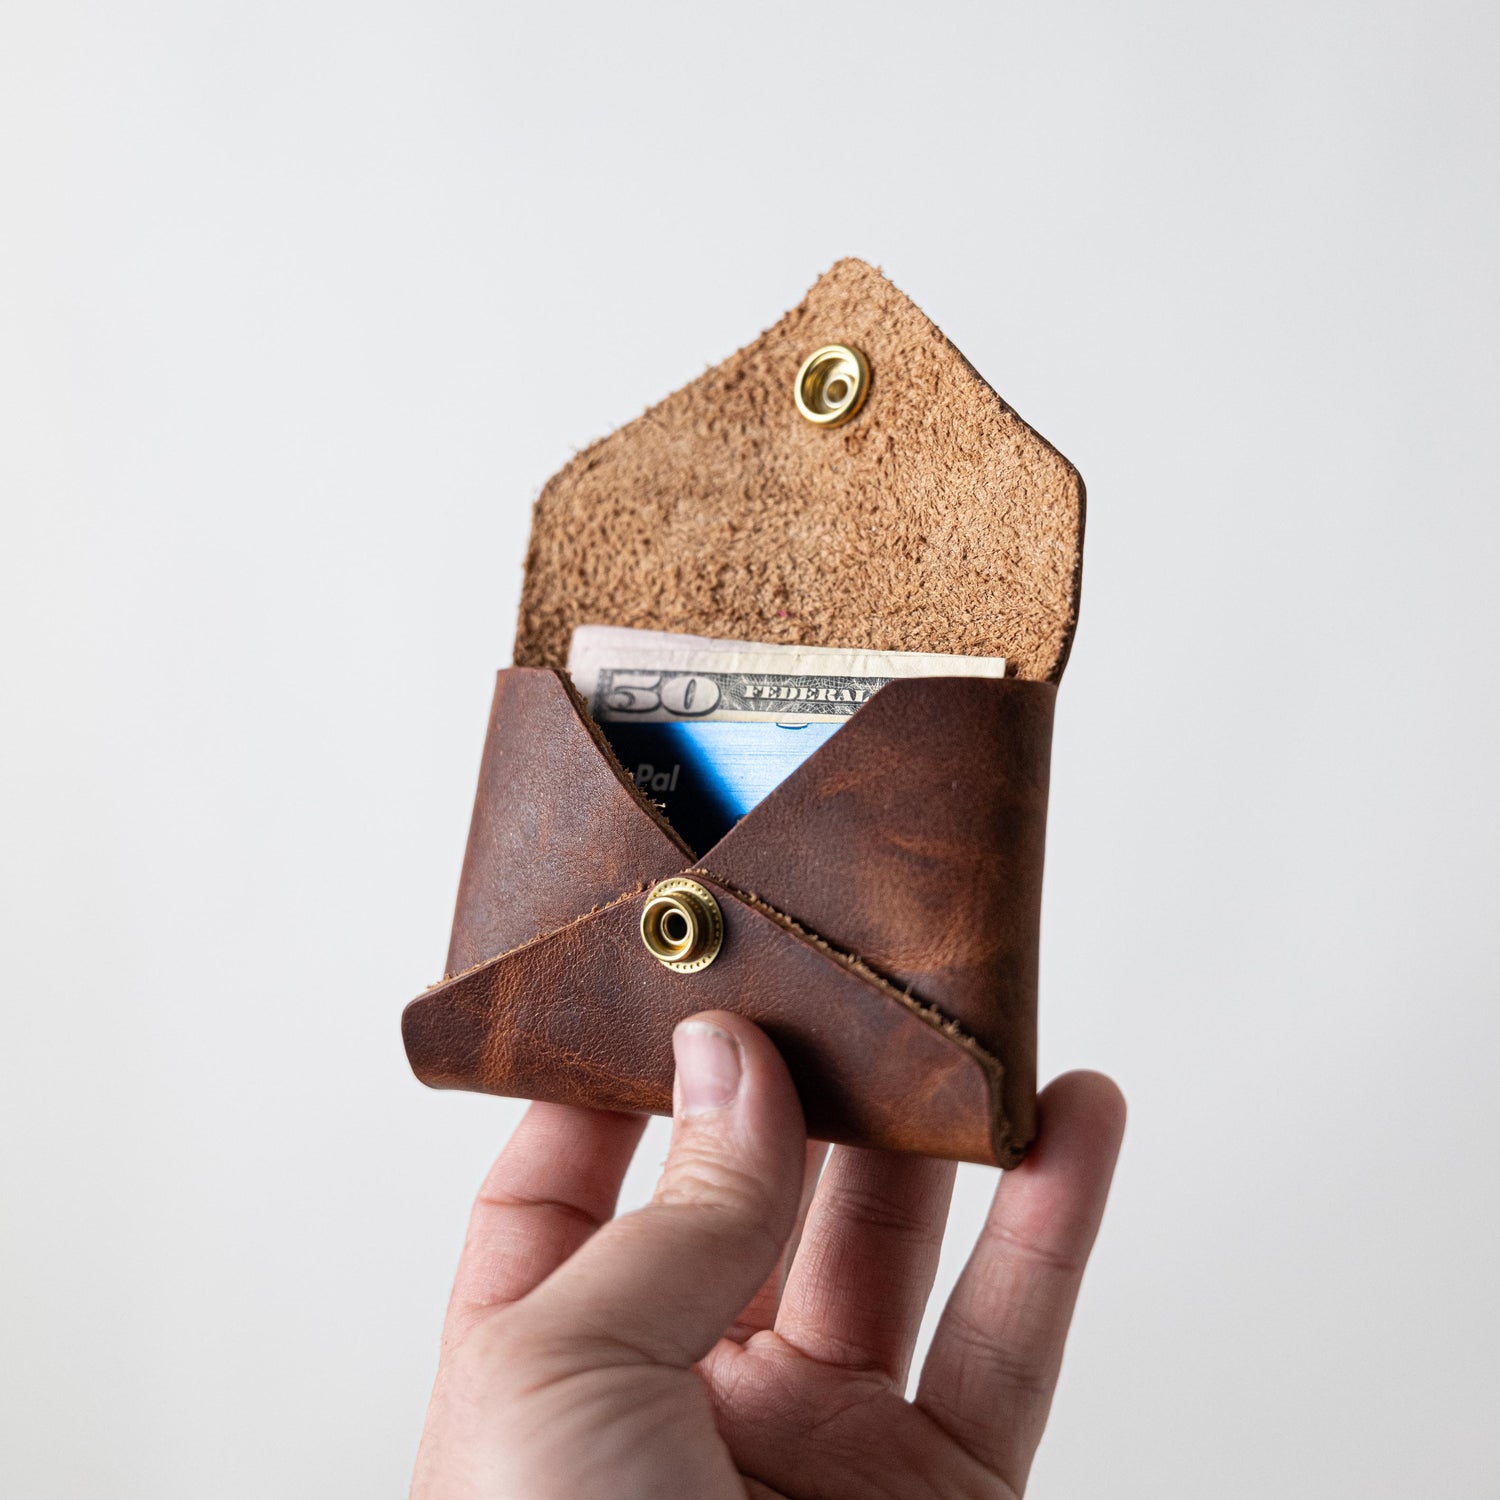 Original Bison Card Envelope- card holder wallet - leather wallet made in America at KMM &amp; Co.